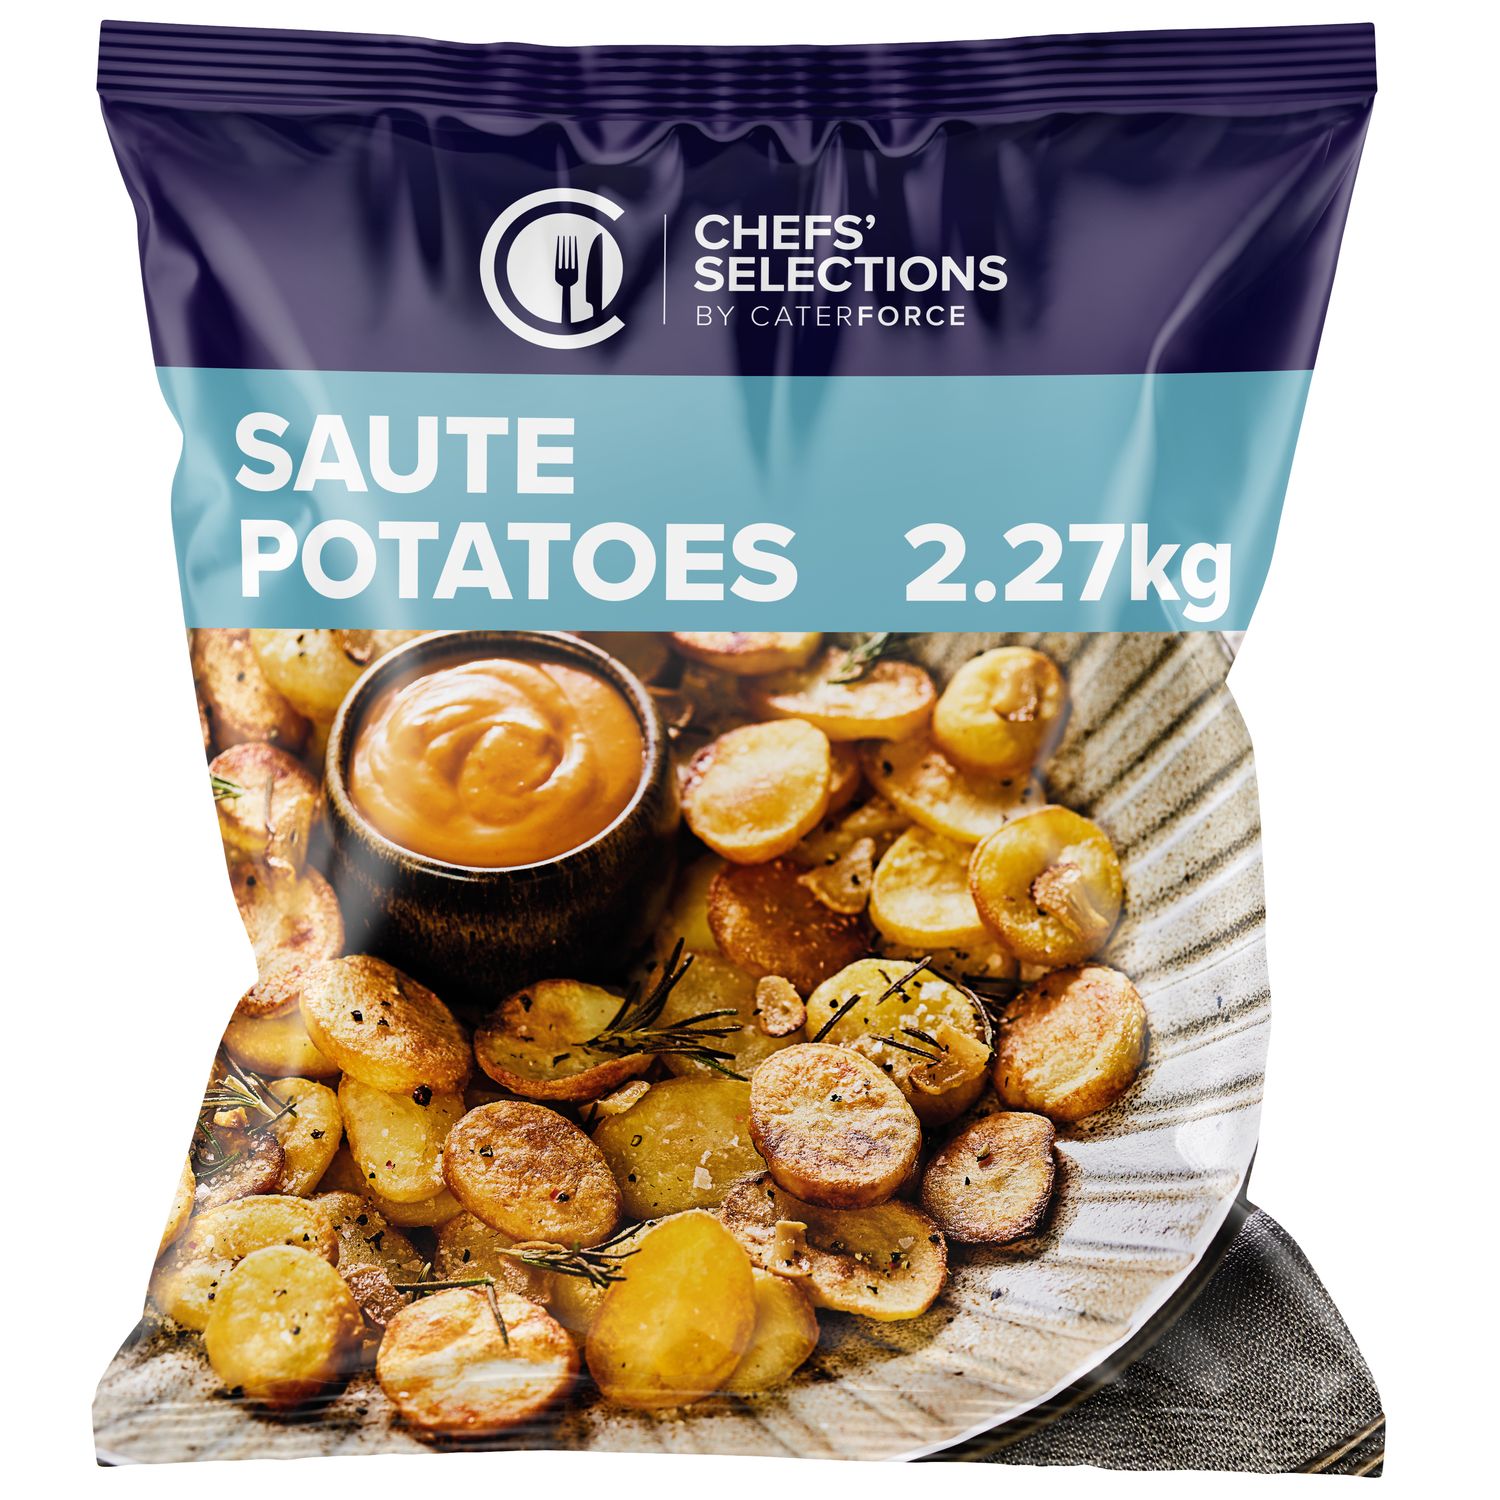 Chefs’ Selections Saute Potatoes (4 x 2.27kg)